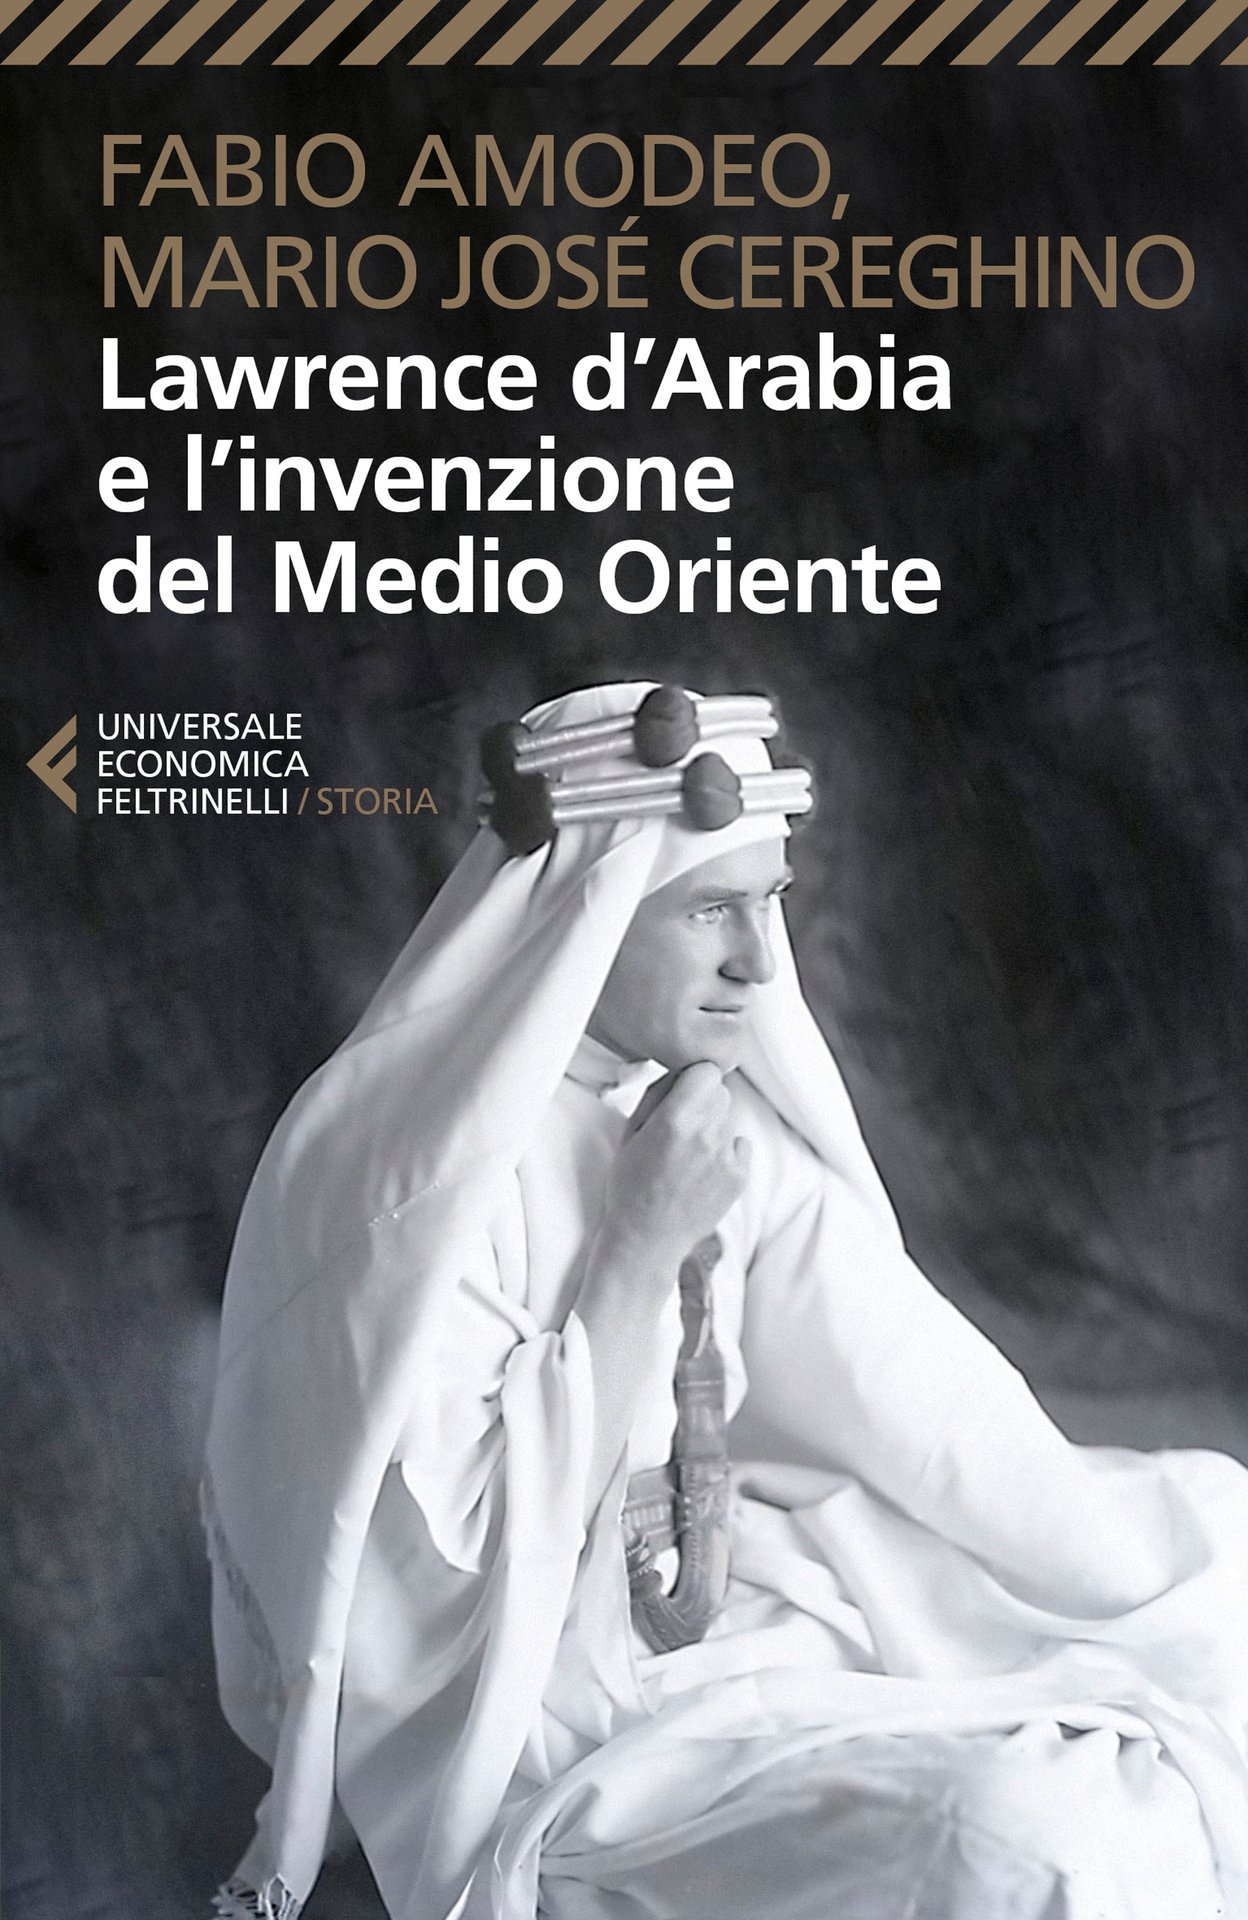 Lawrence d’Arabia e l’invenzione del Medio Oriente